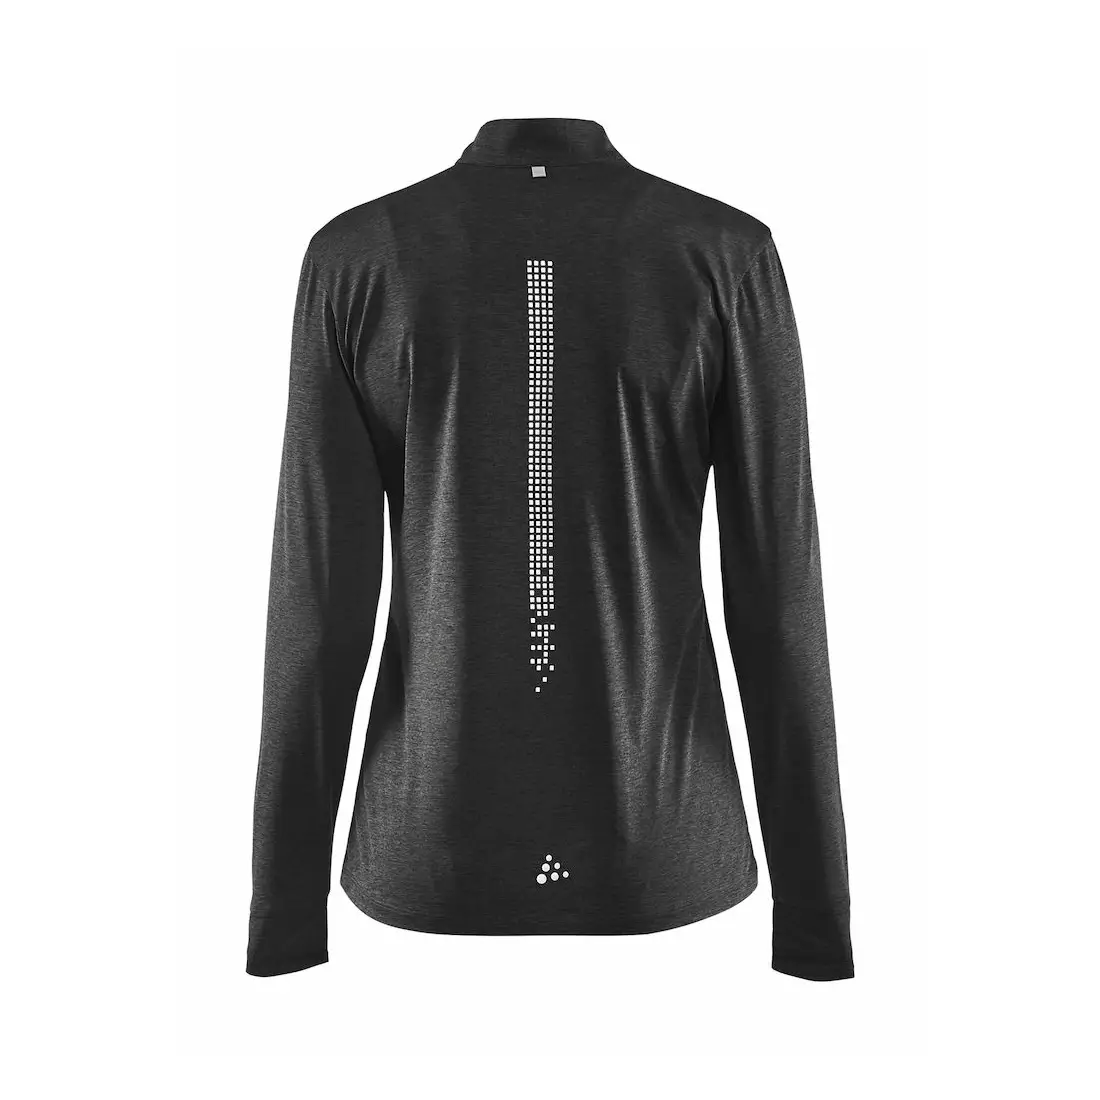 CRAFT REFLECTIVE ZIP 1905499-998000 dámské běžecké tričko s dlouhým rukávem černé